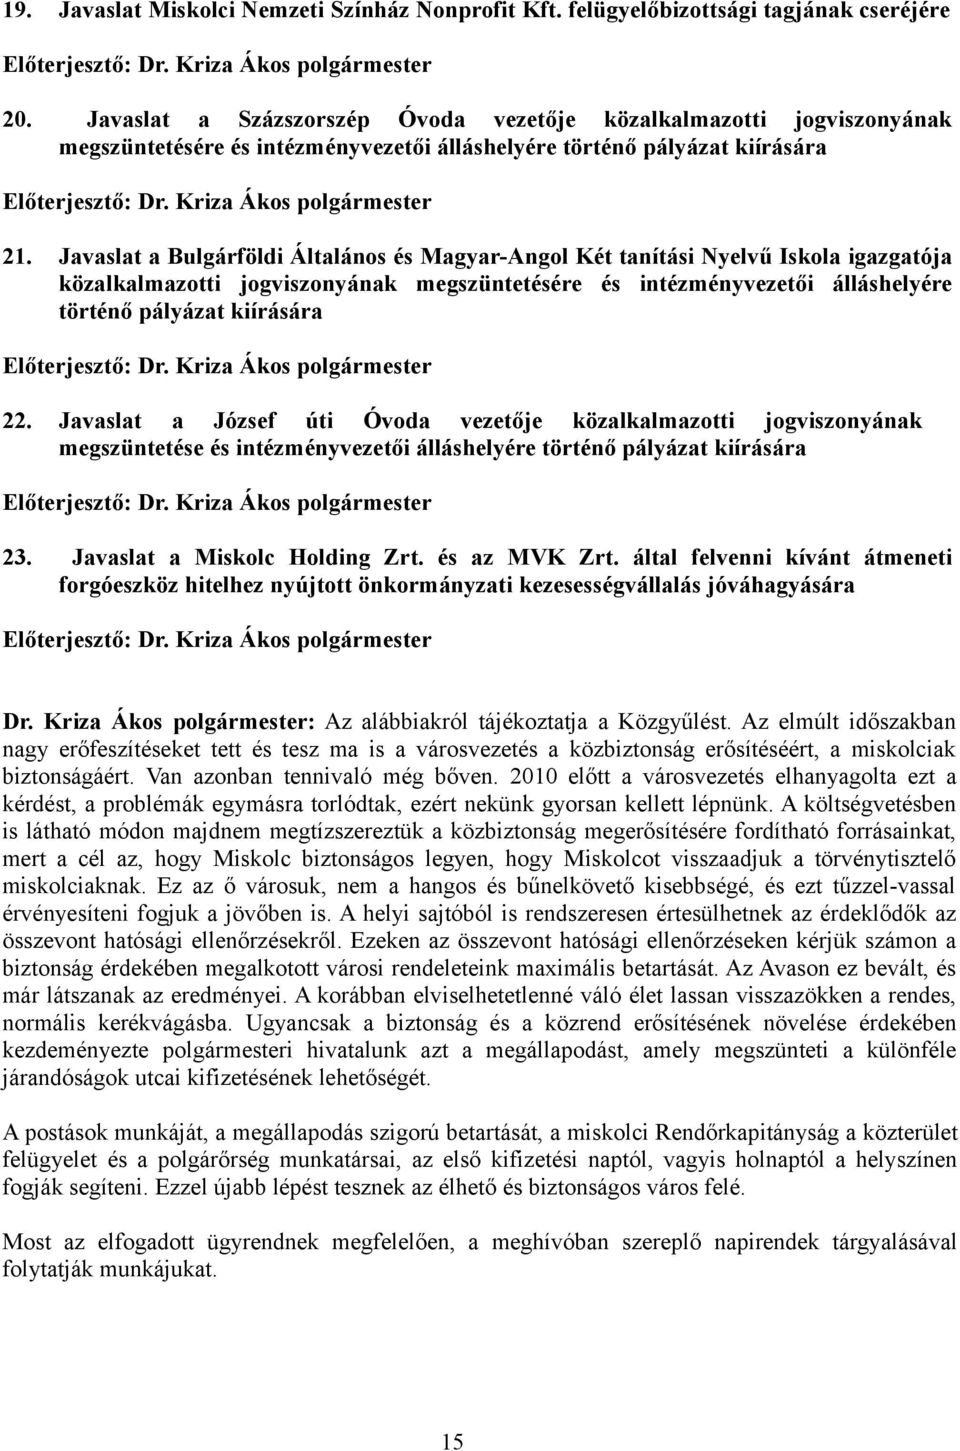 Javaslat a Bulgárföldi Általános és Magyar-Angol Két tanítási Nyelvű Iskola igazgatója közalkalmazotti jogviszonyának megszüntetésére és intézményvezetői álláshelyére történő pályázat kiírására